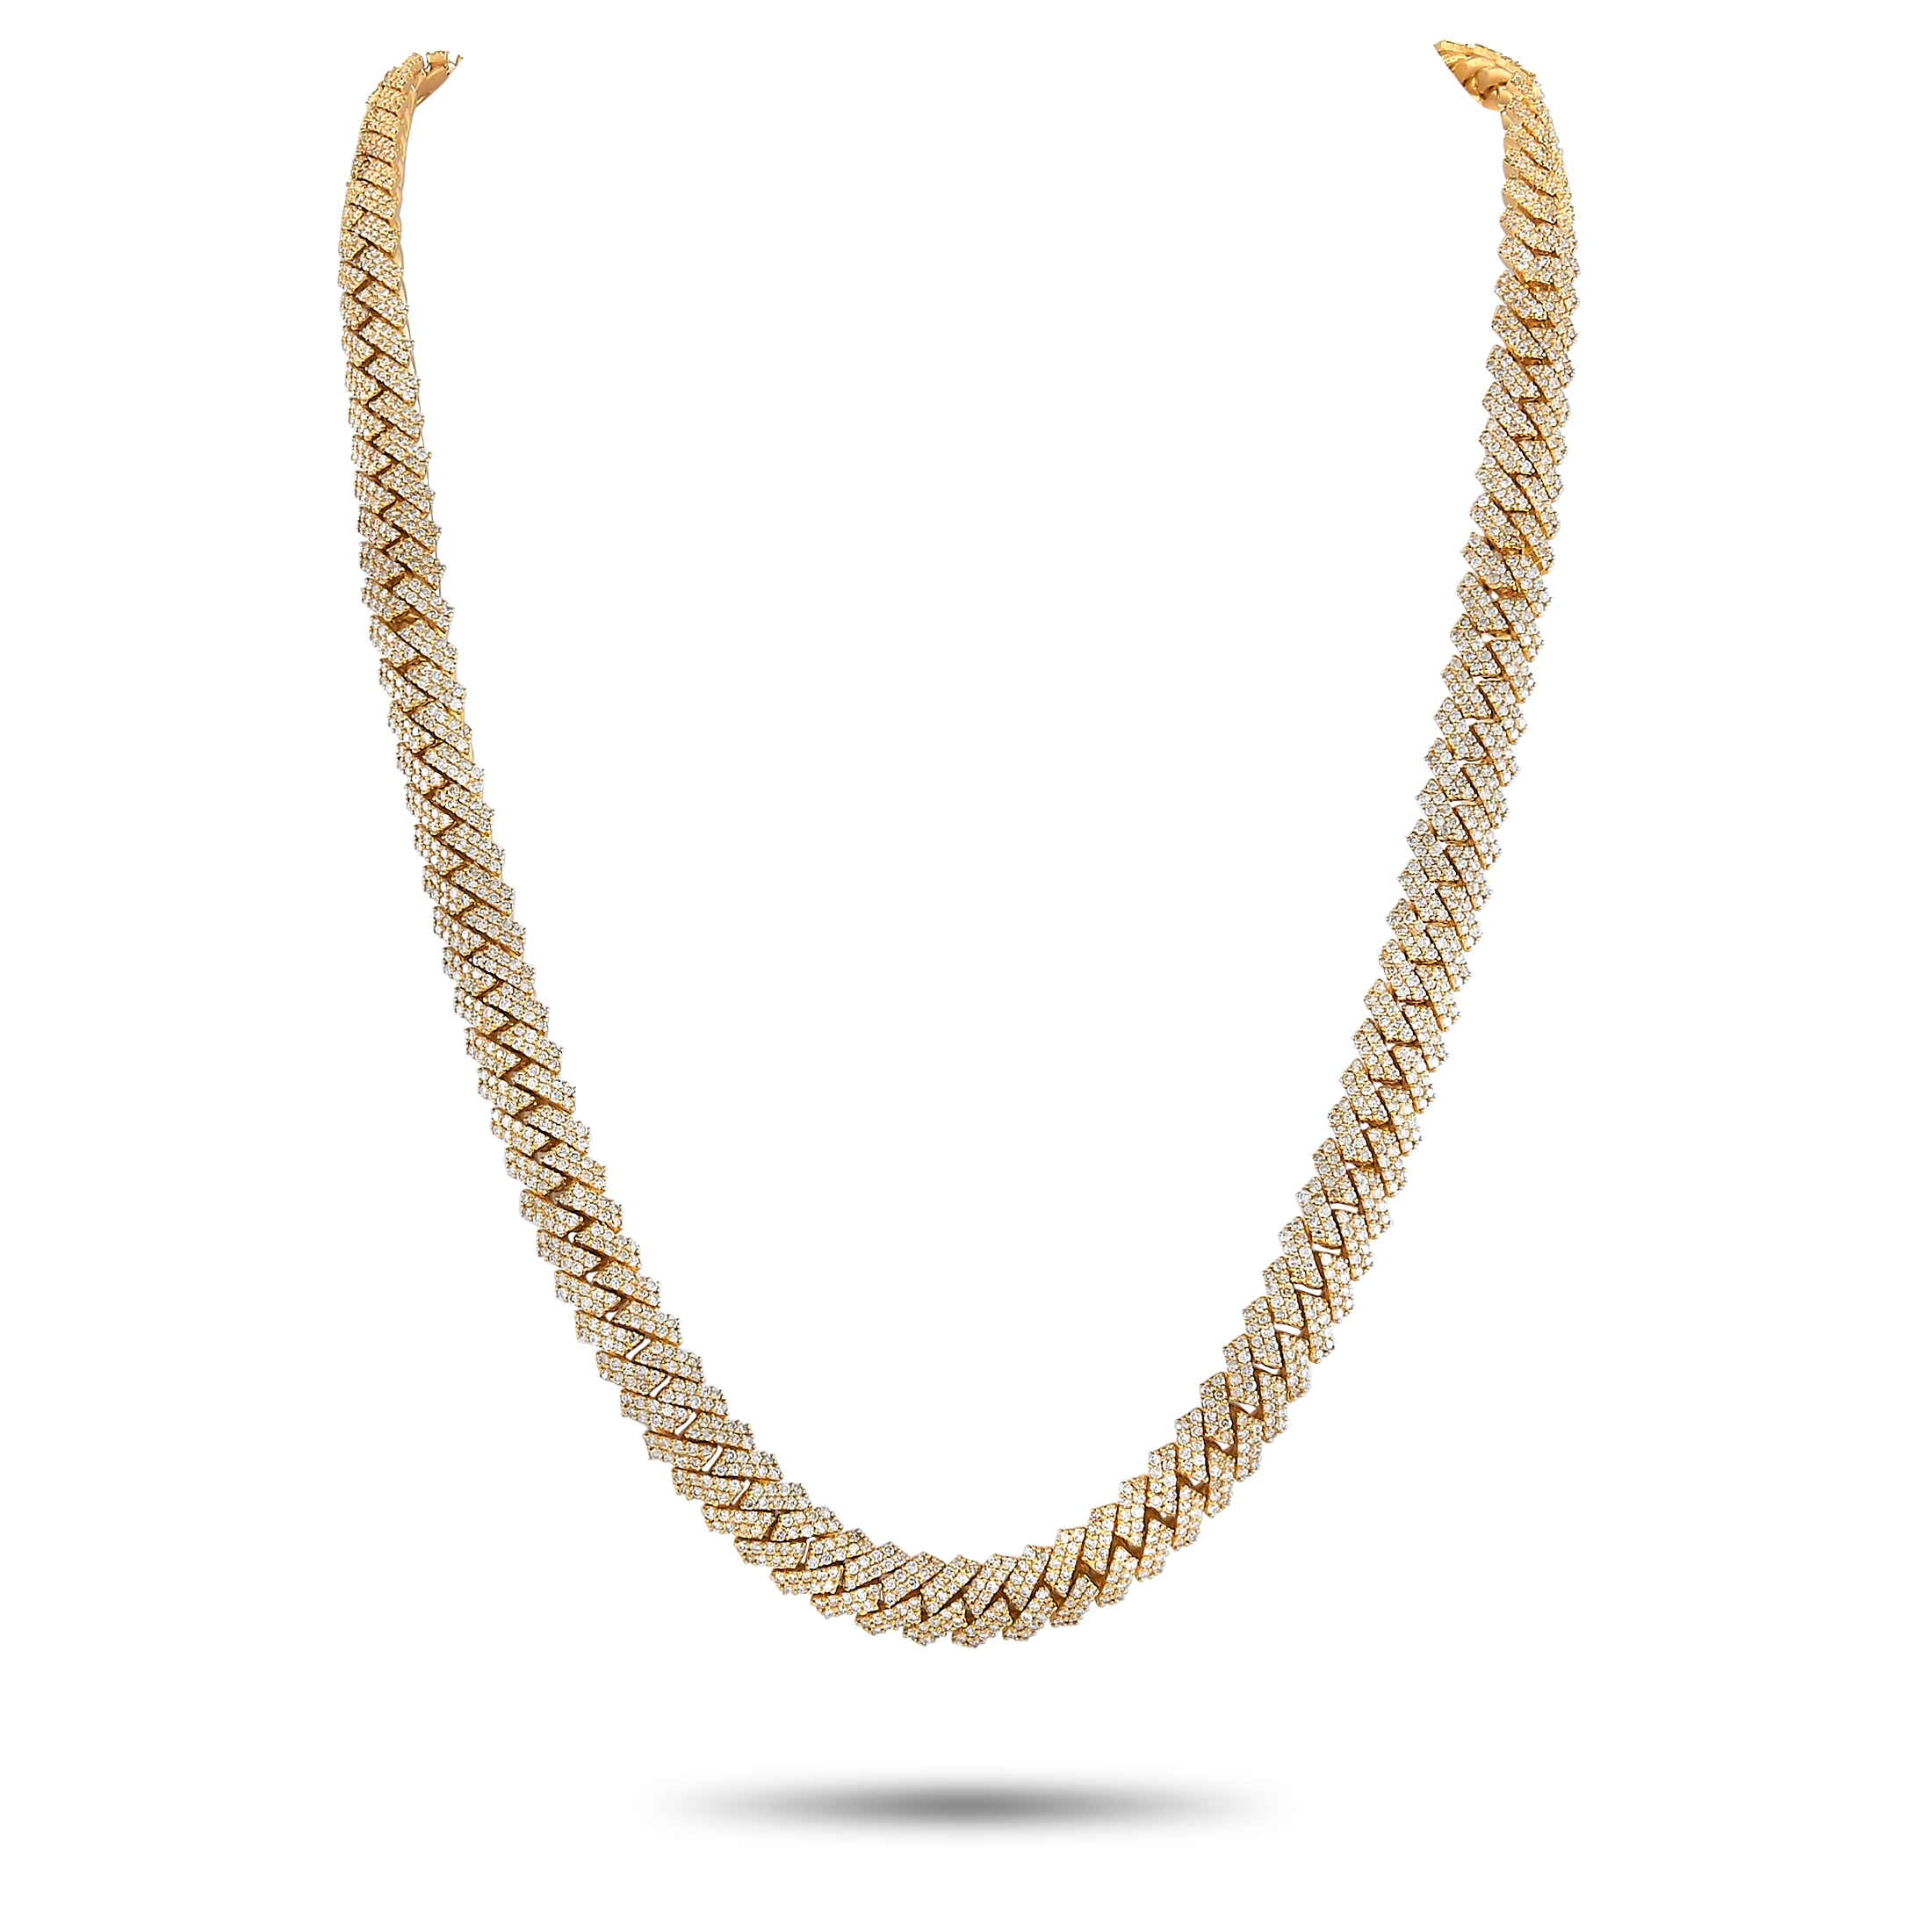 The MK » Lv Chain Design Necklace